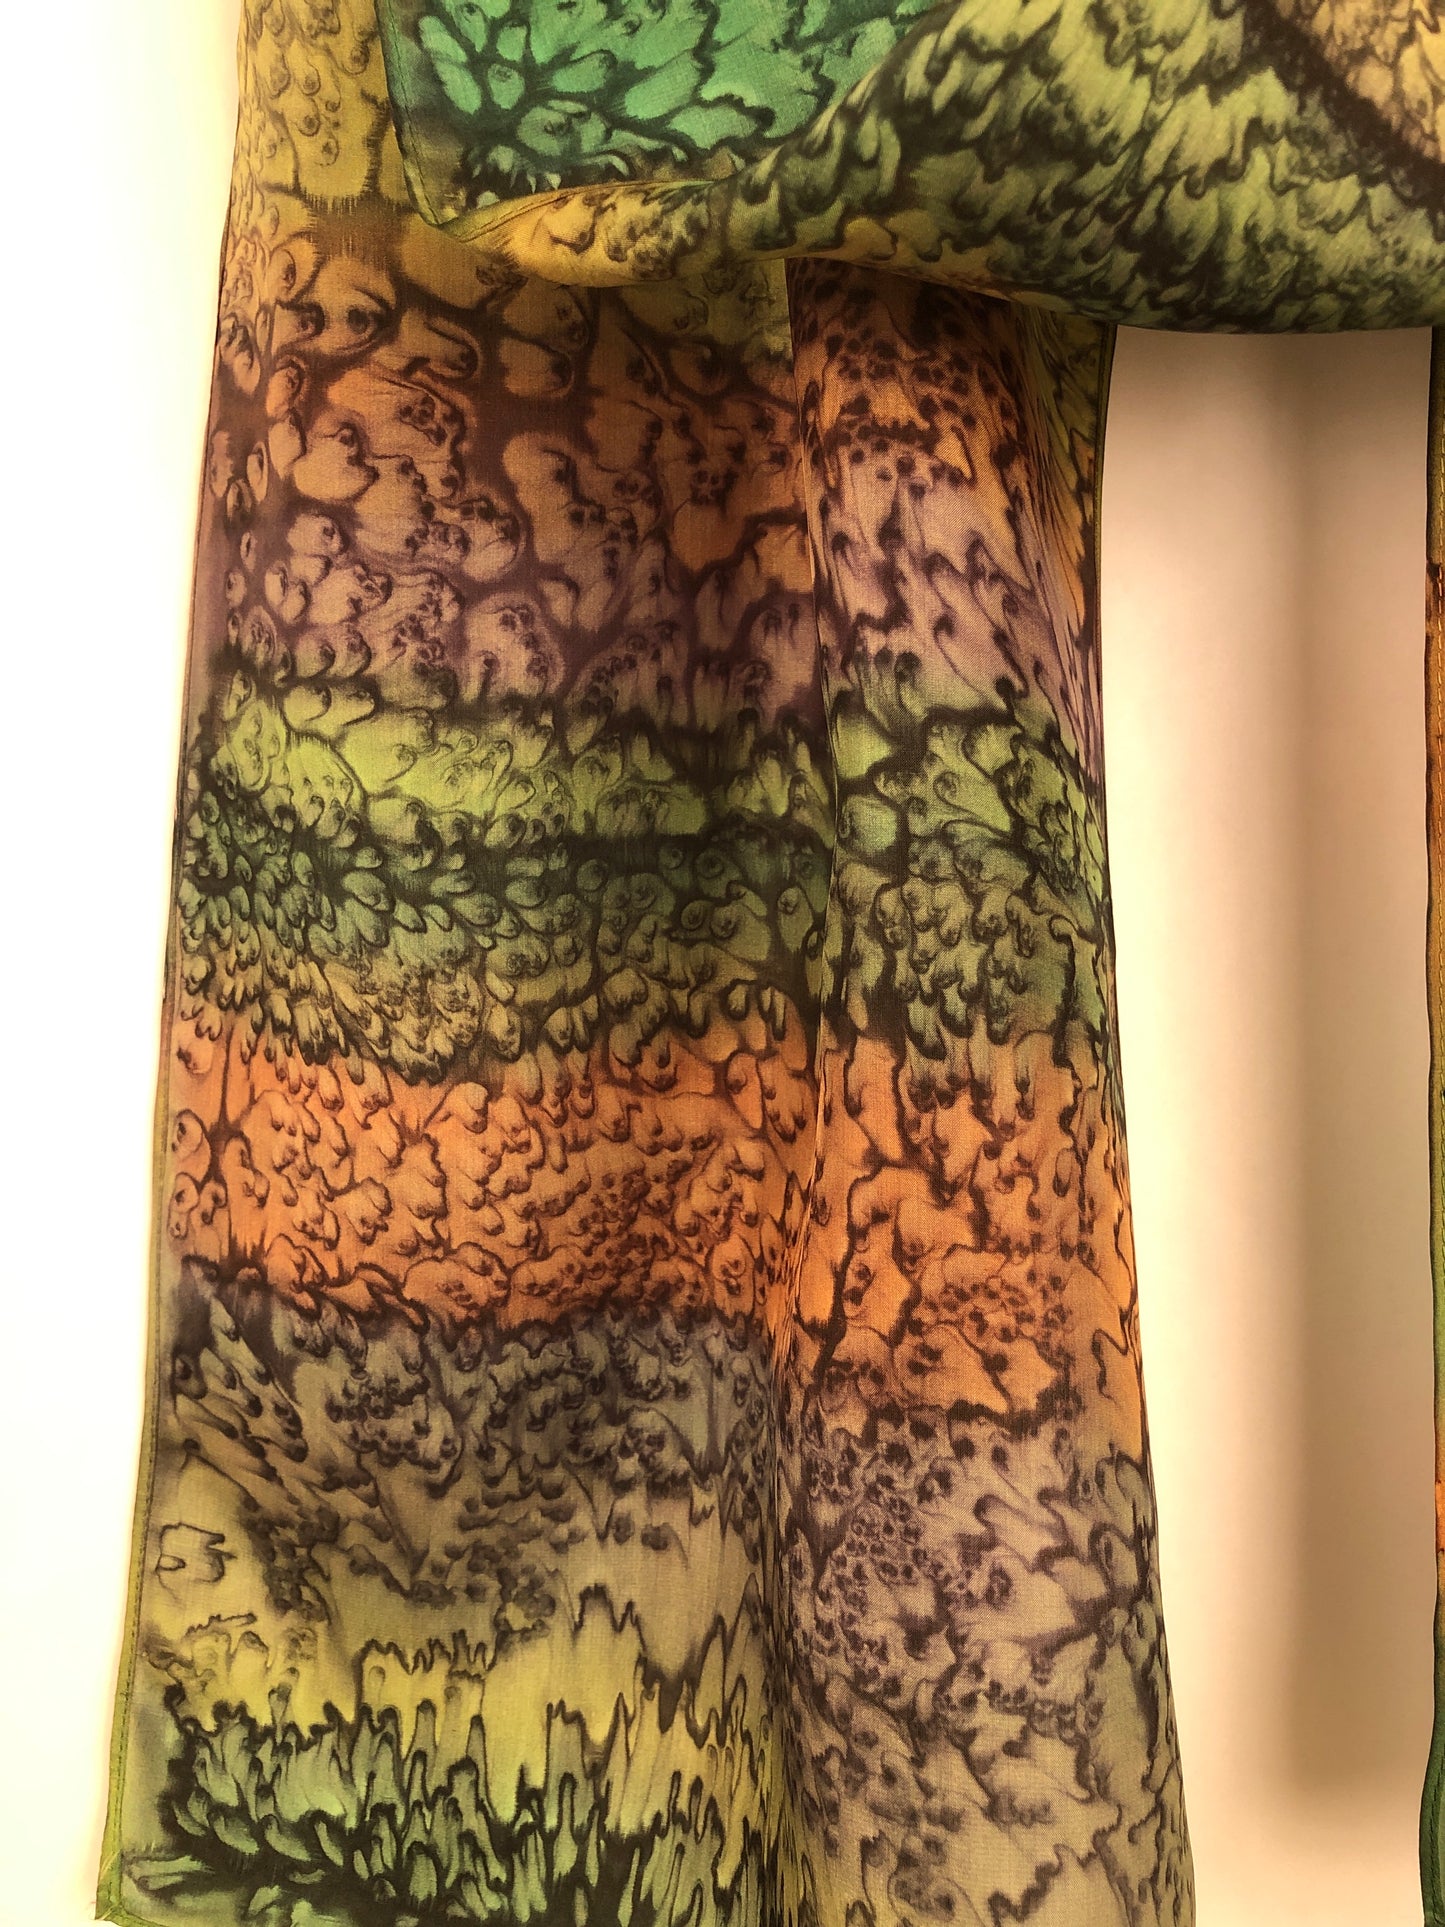 "Woodsy Mermaid" - Hand-dyed Silk Scarf - $115